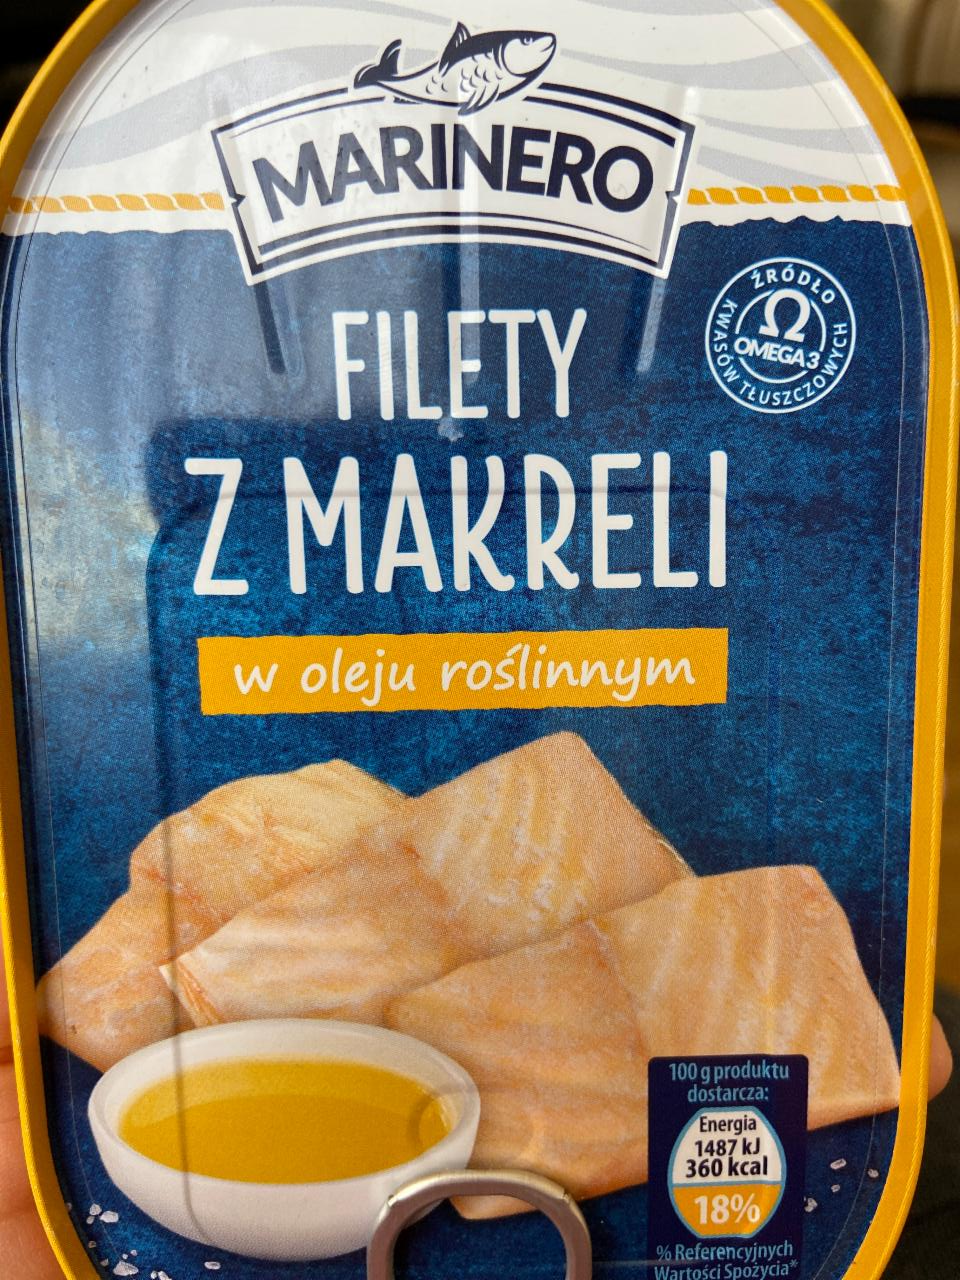 Zdjęcia - Filety z makreli w oleju roślinnym Marinero